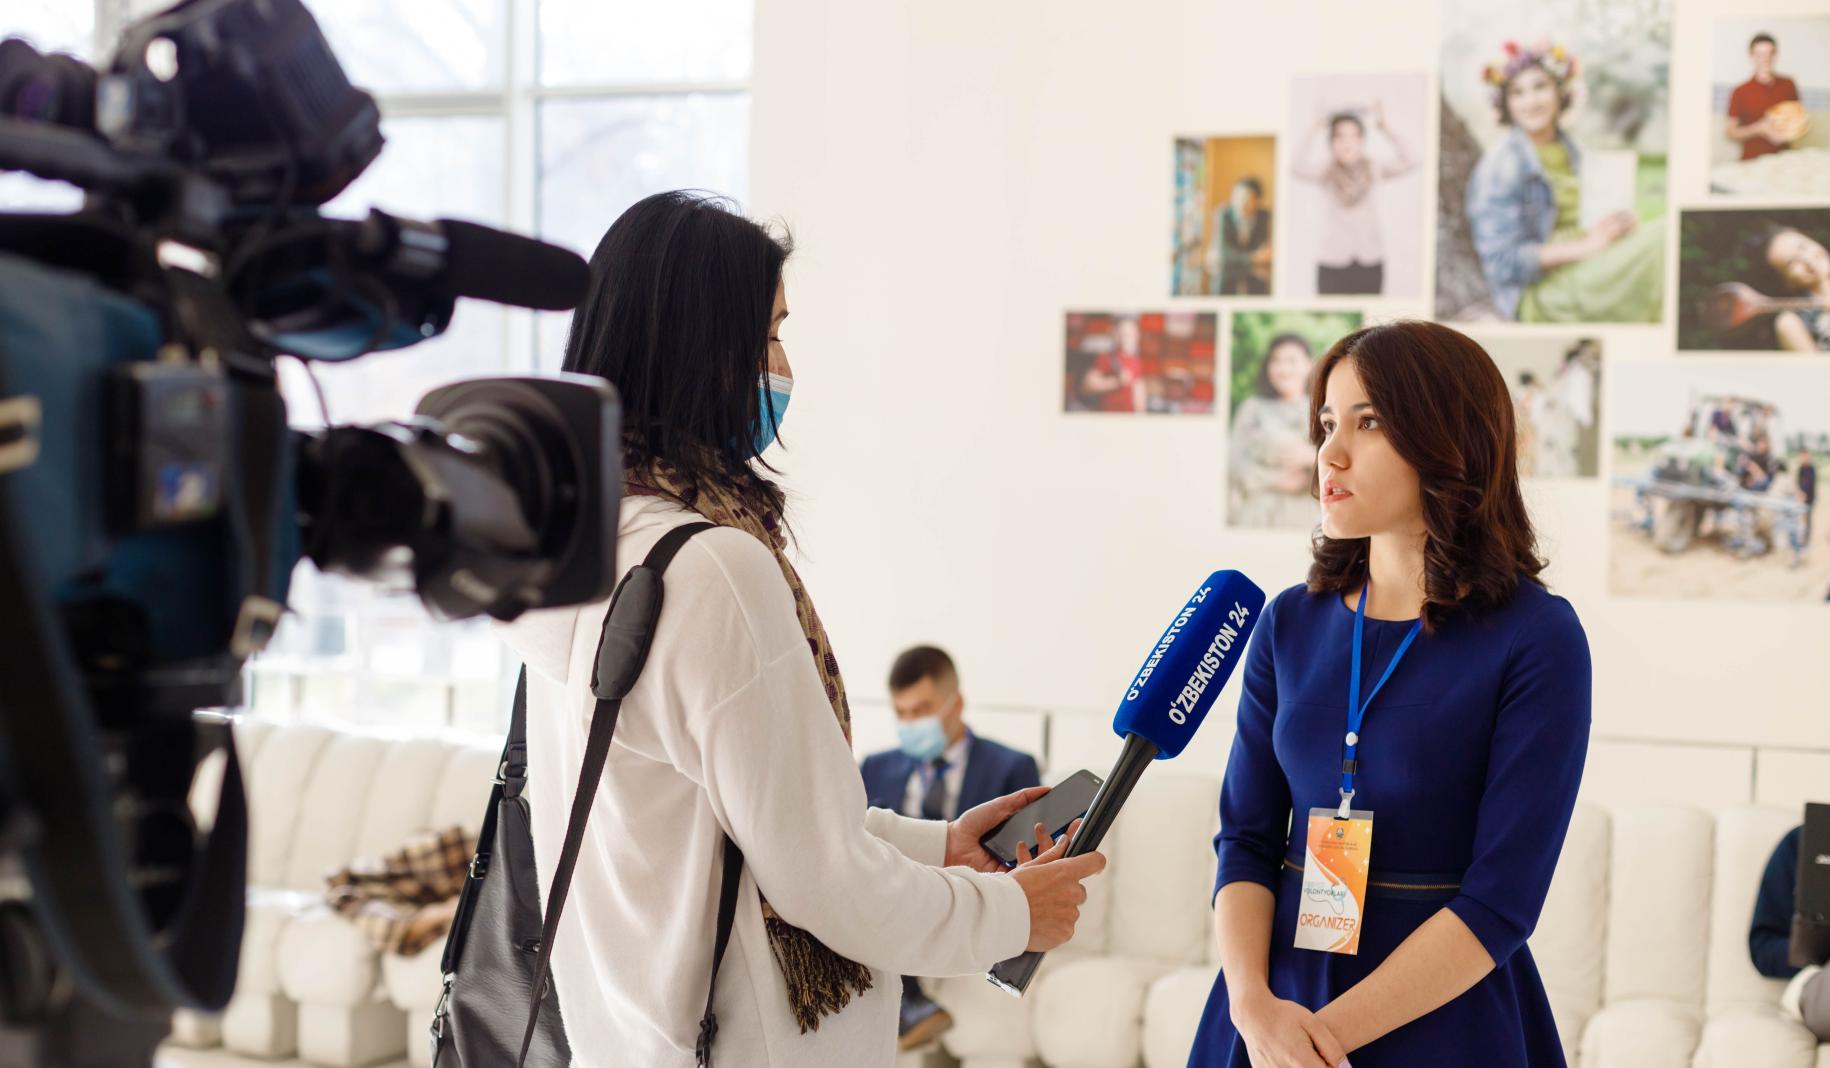 Una joven está siendo entrevistada por un reportero de televisión.